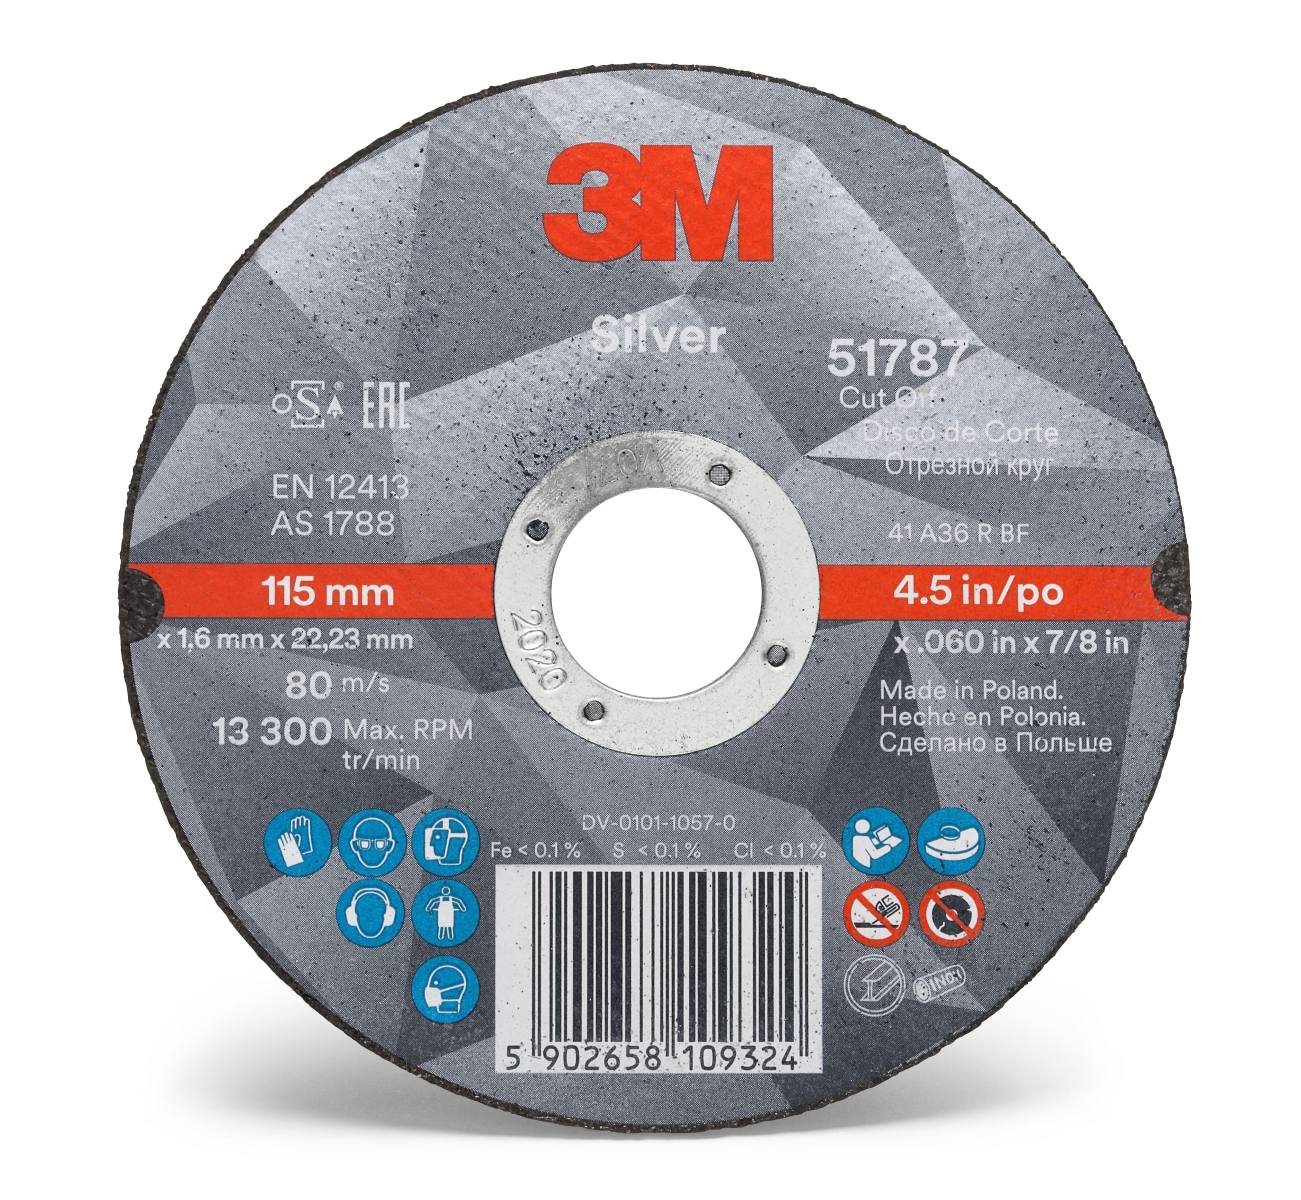 3M Silver Cut-Off Wheel Disque à tronçonner, 150 mm, 1,6 mm, 22,23 mm, T41, 51814